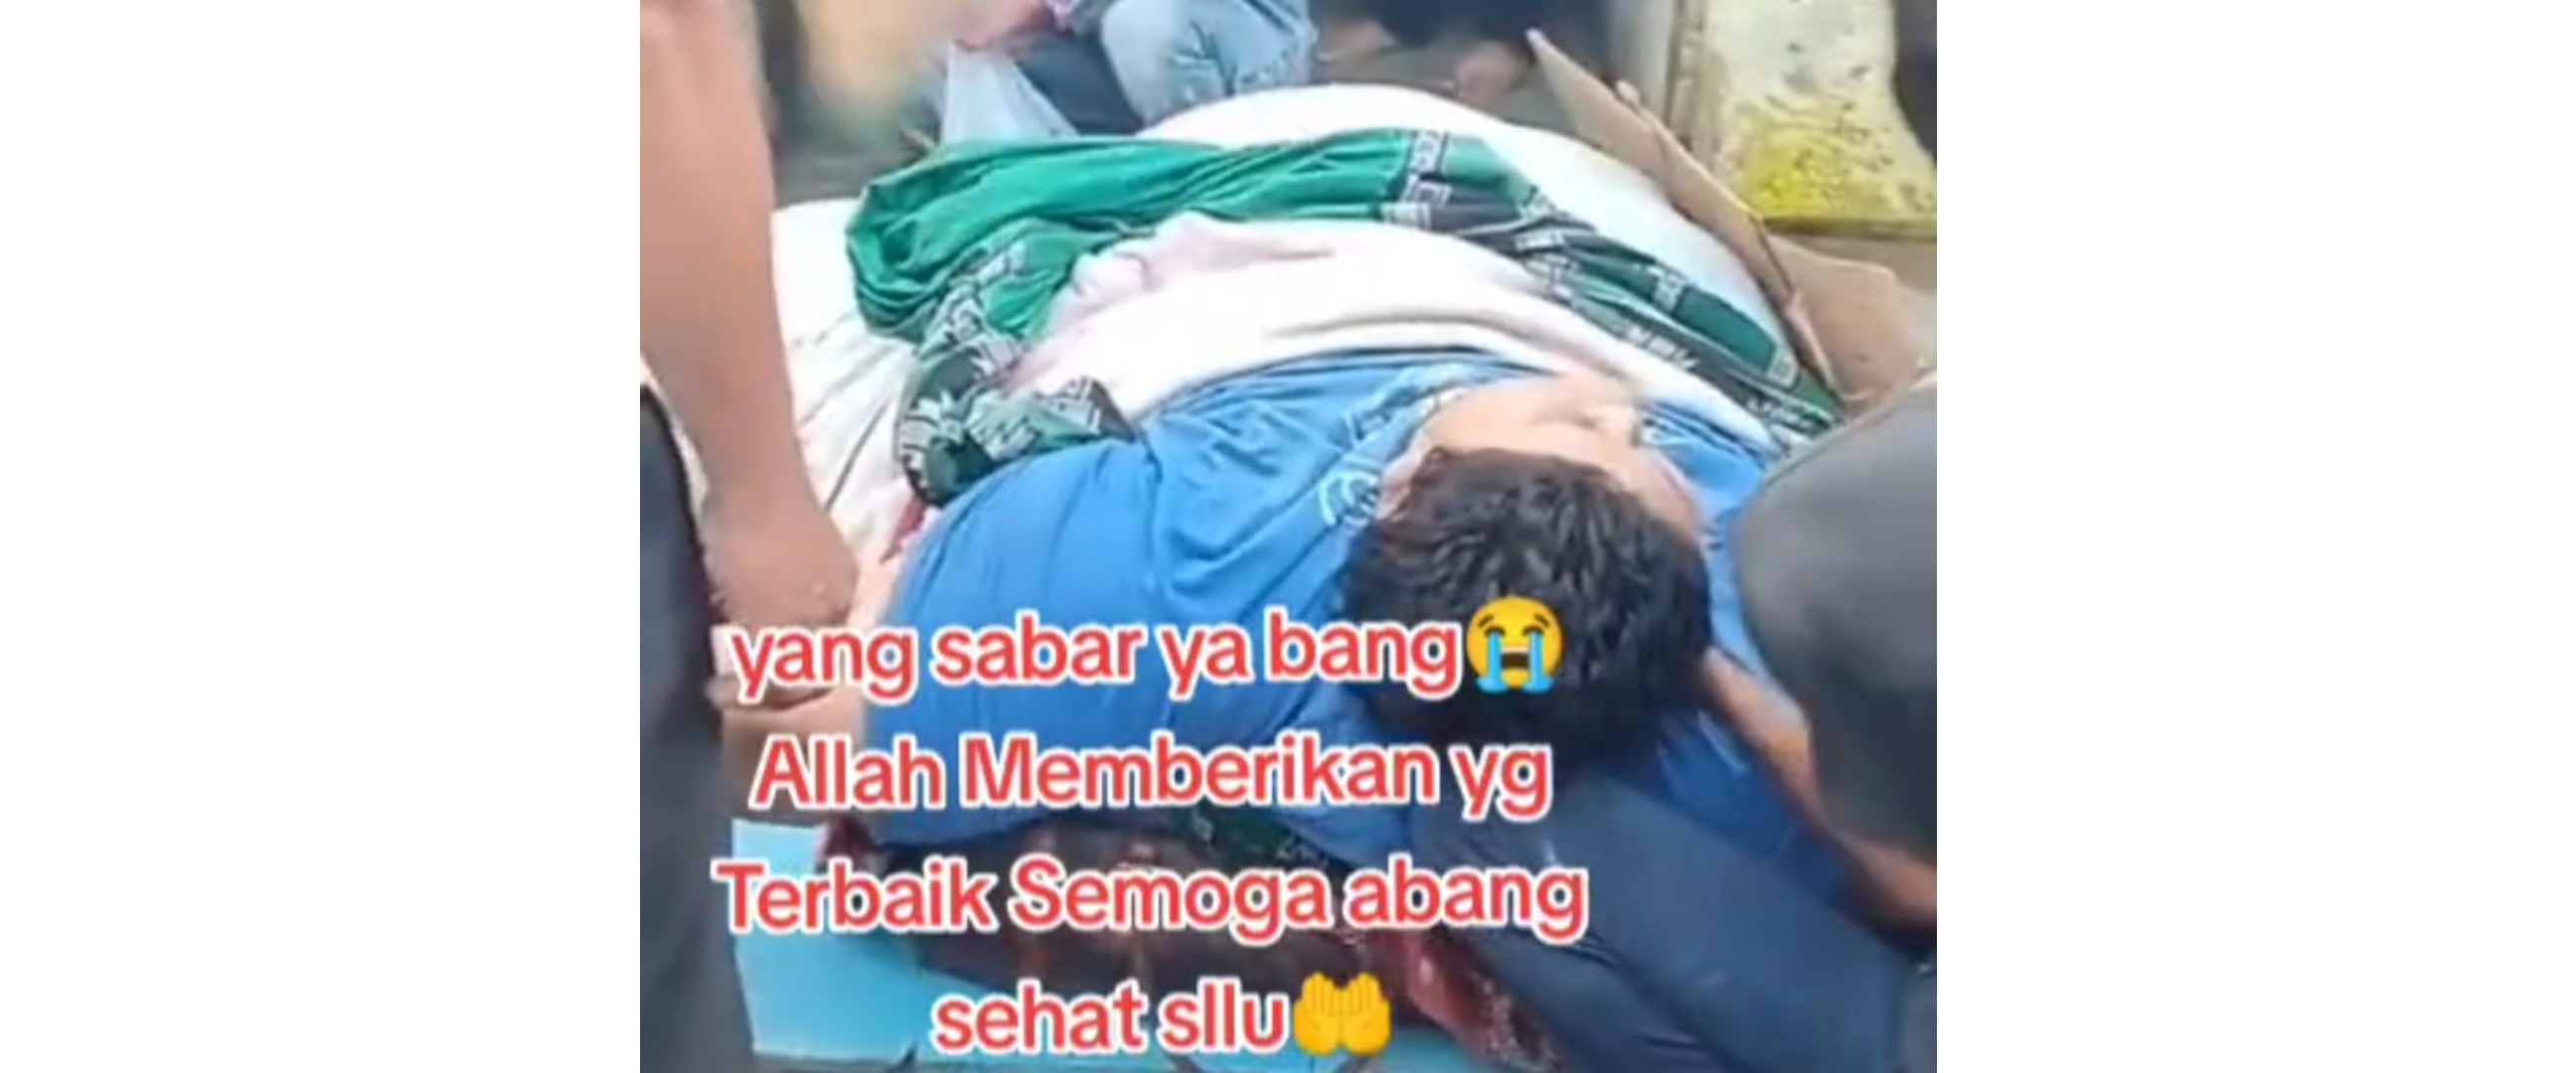 Momen evakuasi pria berbobot 300 kg di Tangerang, bongkar pintu rumah hingga diangkut pakai forklift